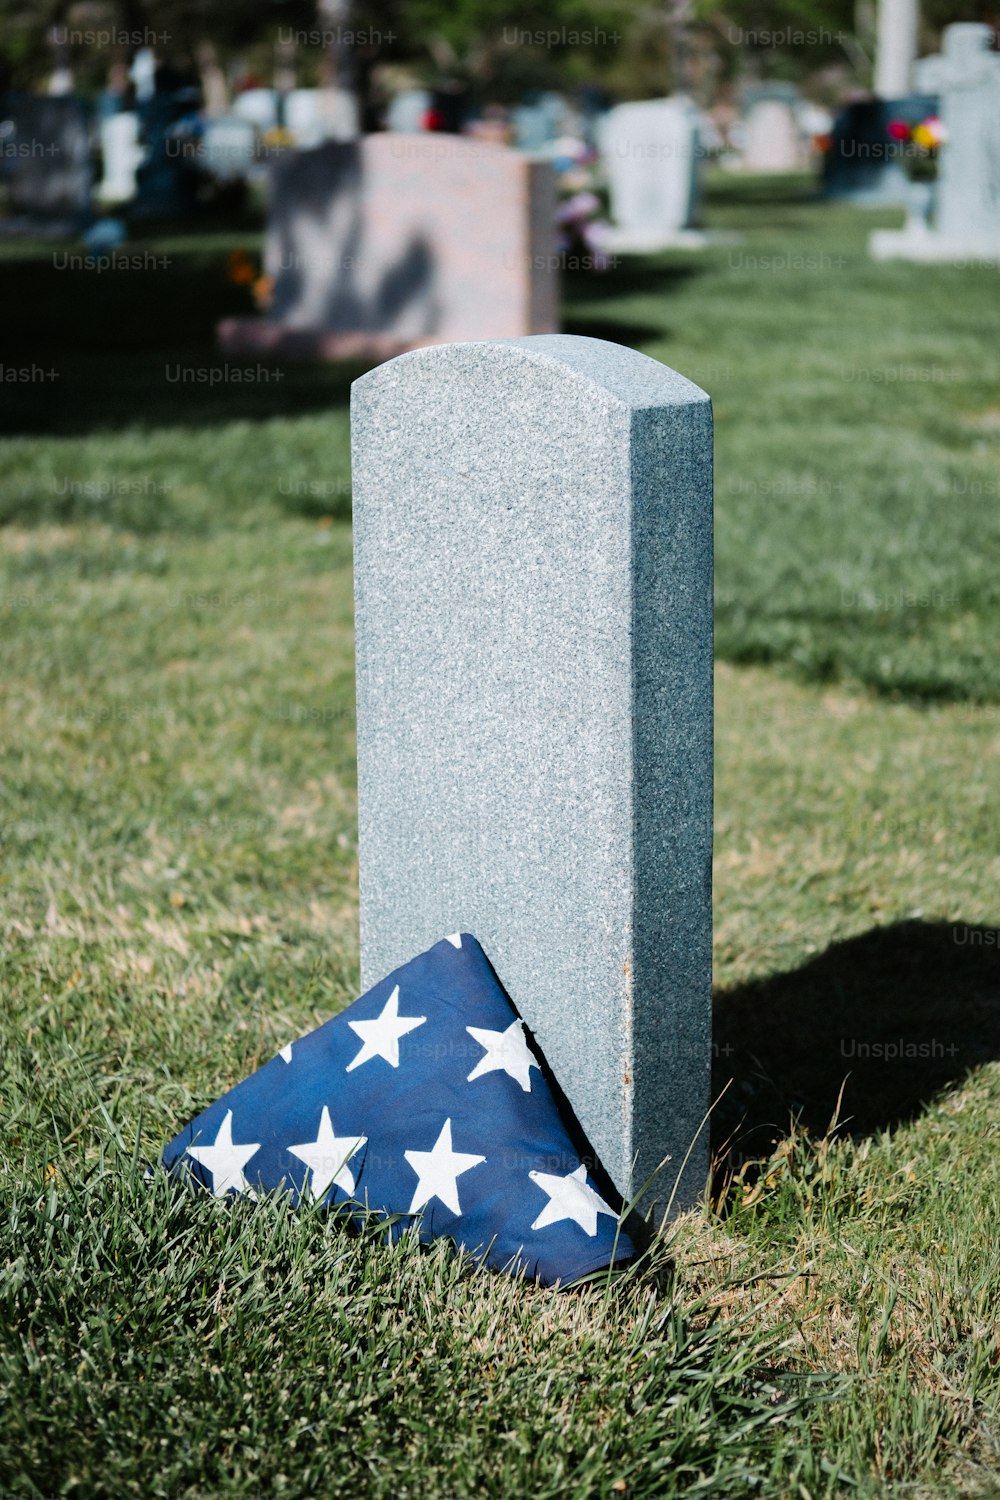 풀밭의 무덤 위에 놓인 깃발